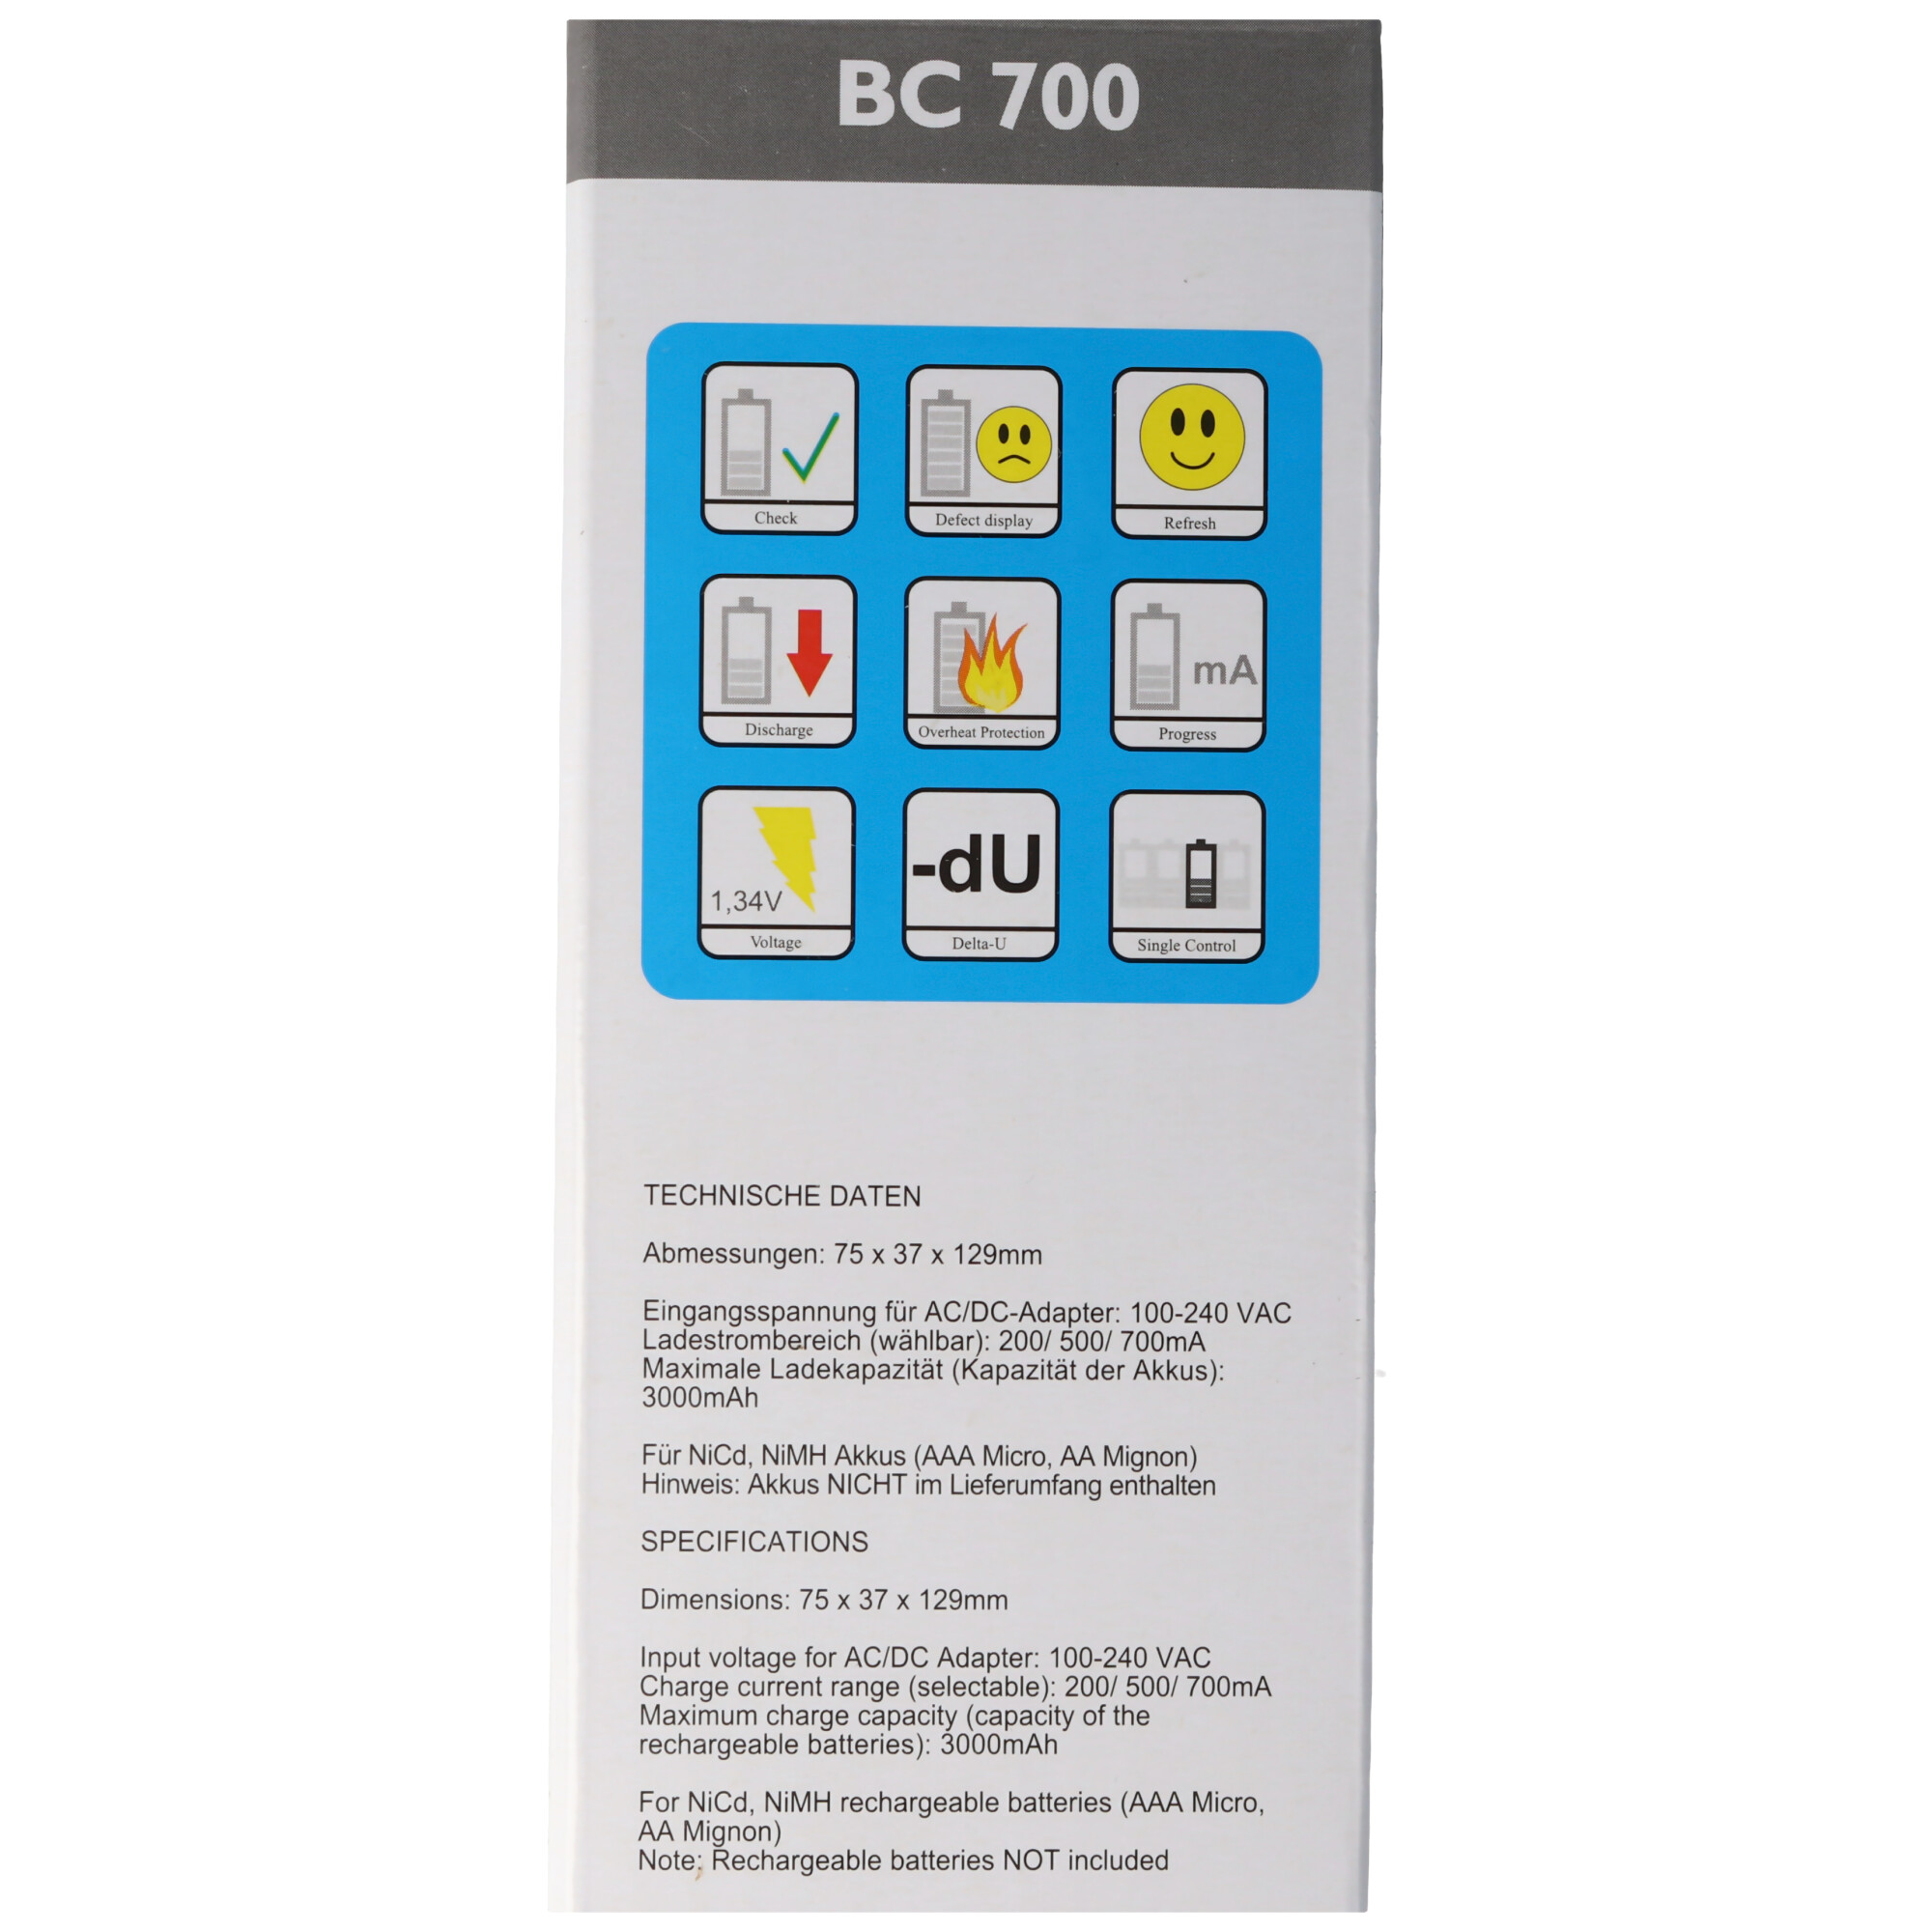 Schnell-Ladegerät BC 700 mit Entladefunktion und LCD-Display